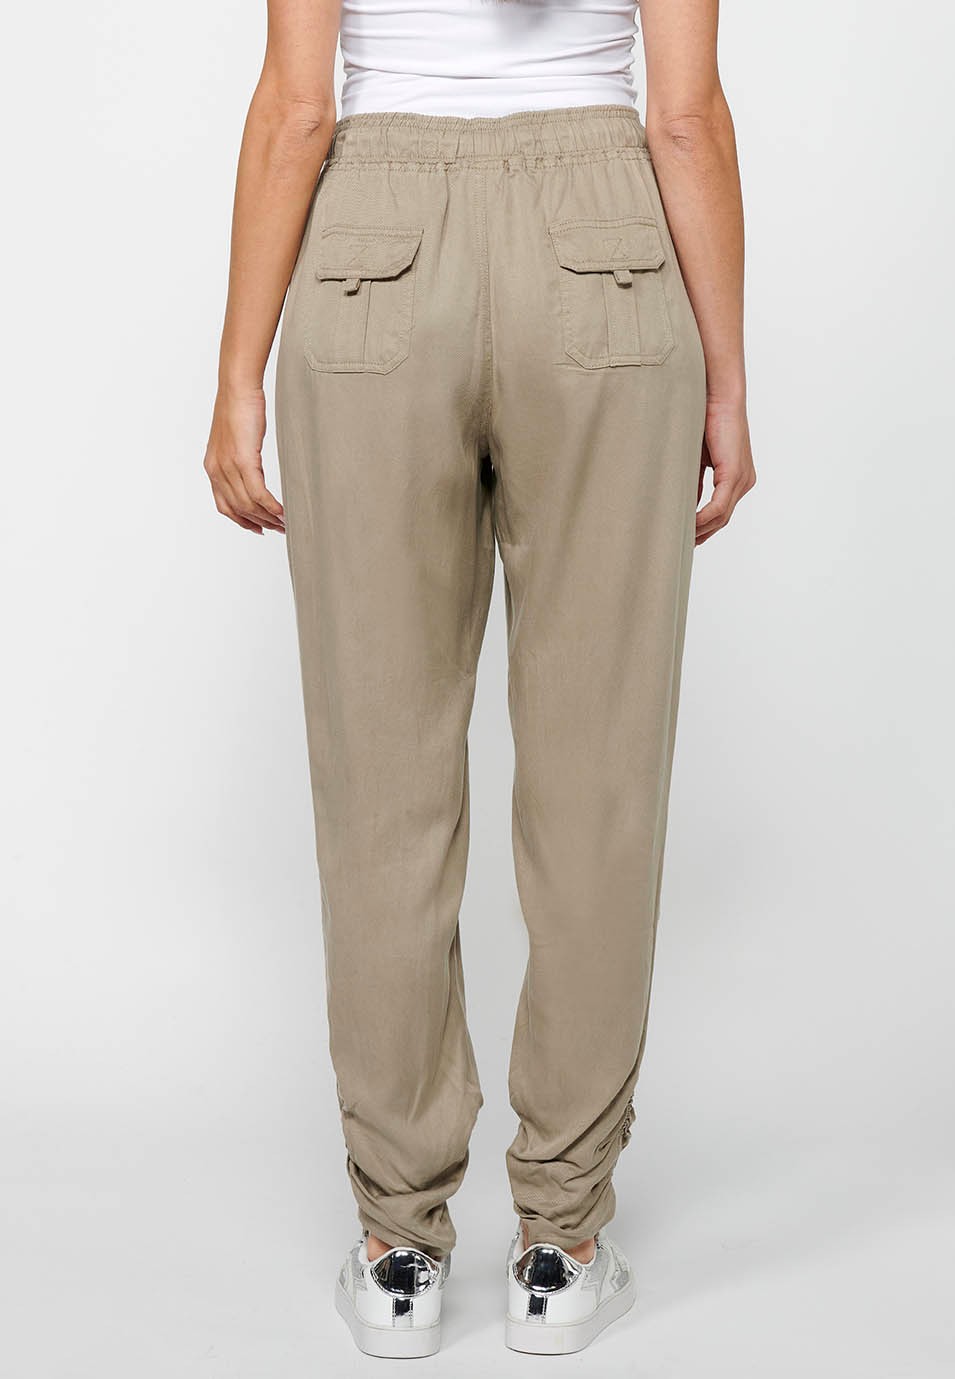 Pantalon de jogging long finition bouclée et taille caoutchoutée avec quatre poches, deux poches arrière à rabat en Gris pour Femme 4